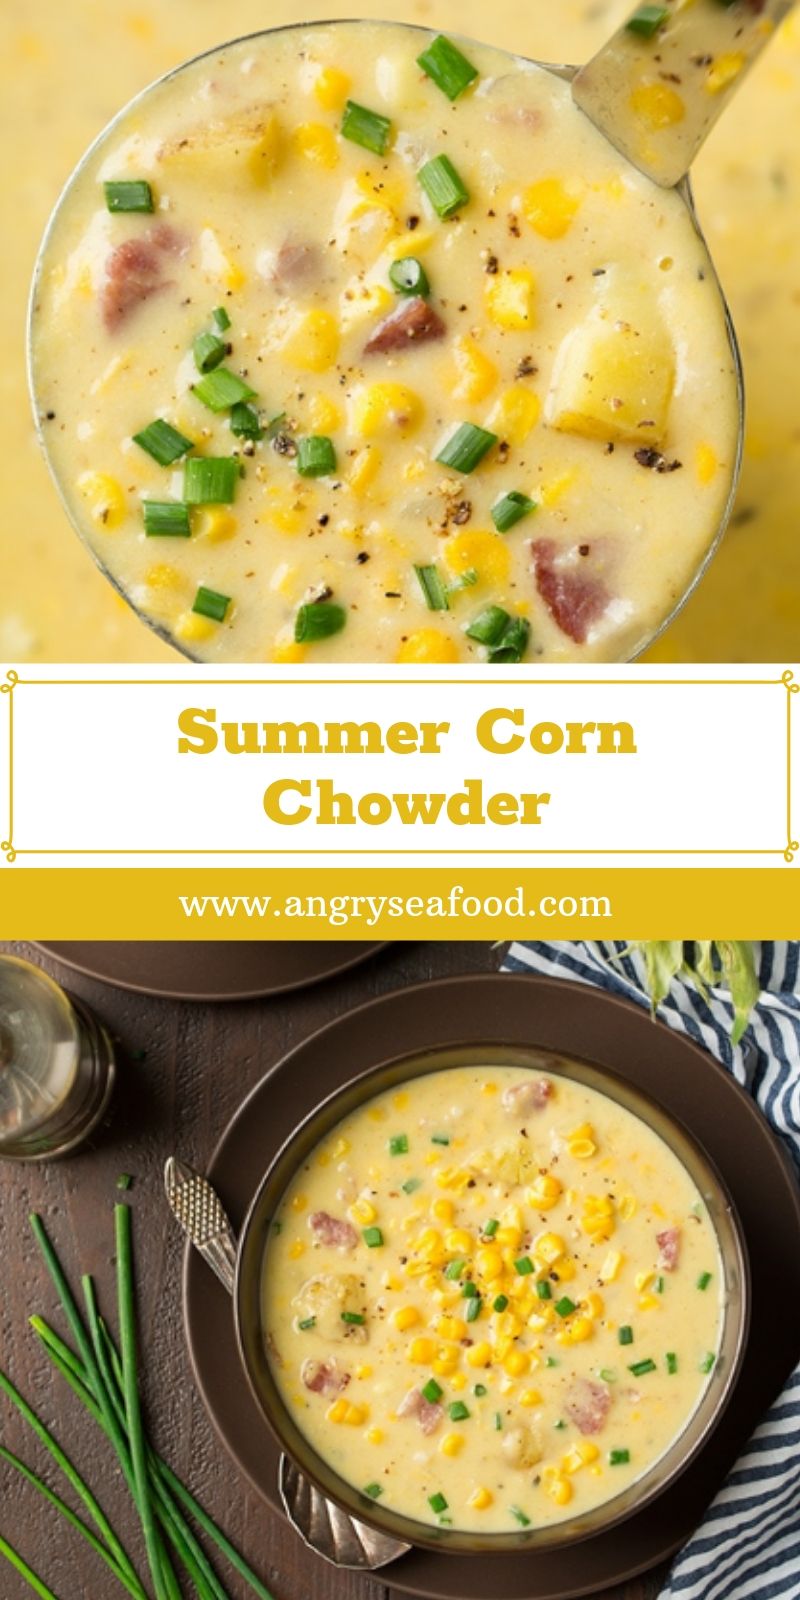   Summer Corn Chowder